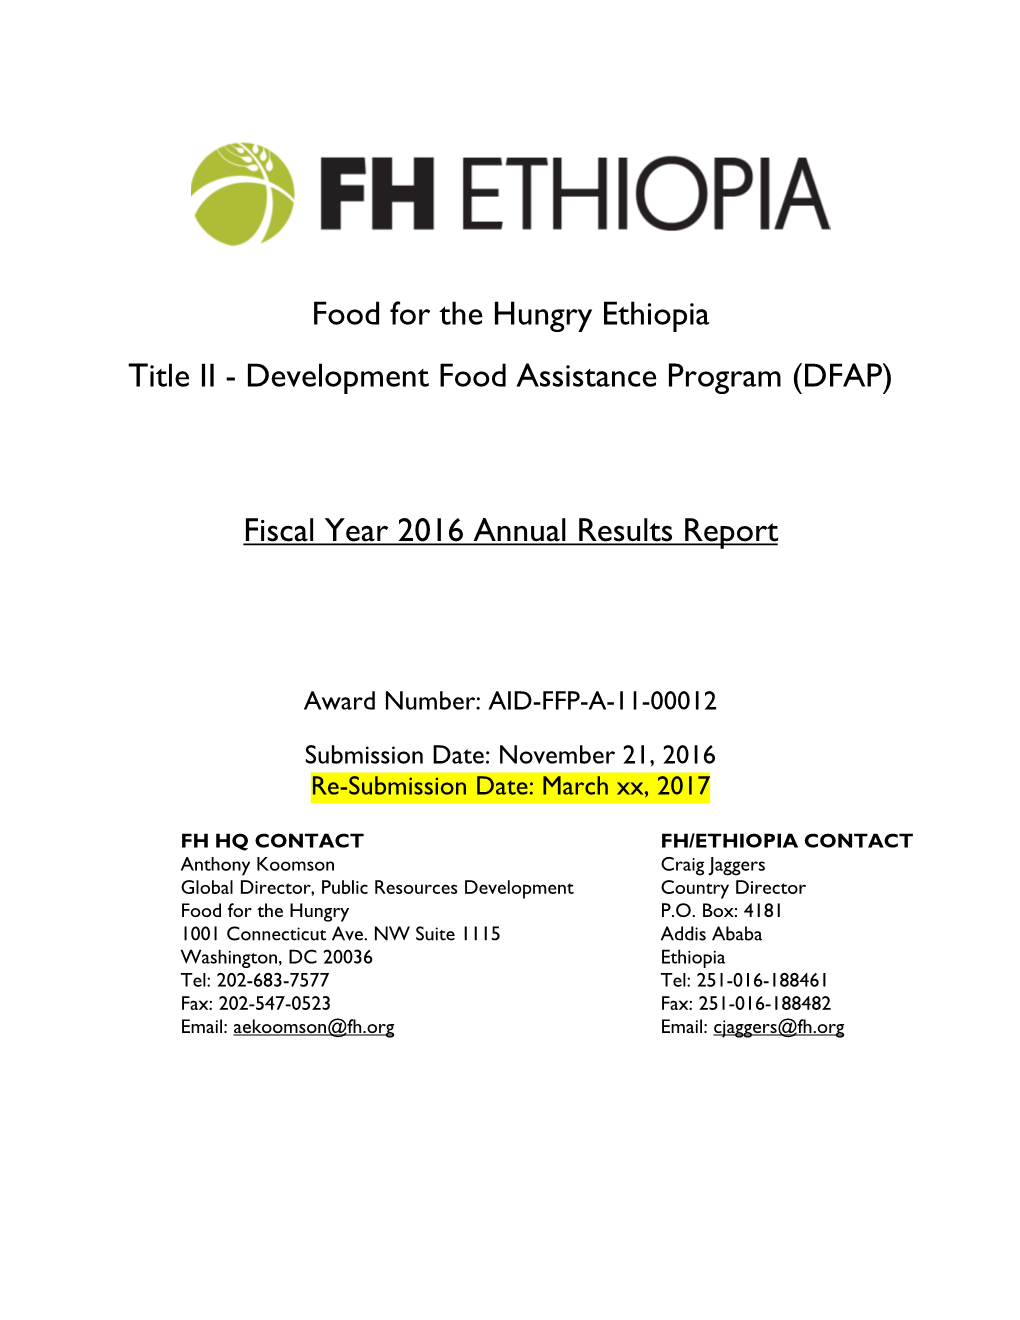 Development Food Assistance Program (DFAP) Fiscal